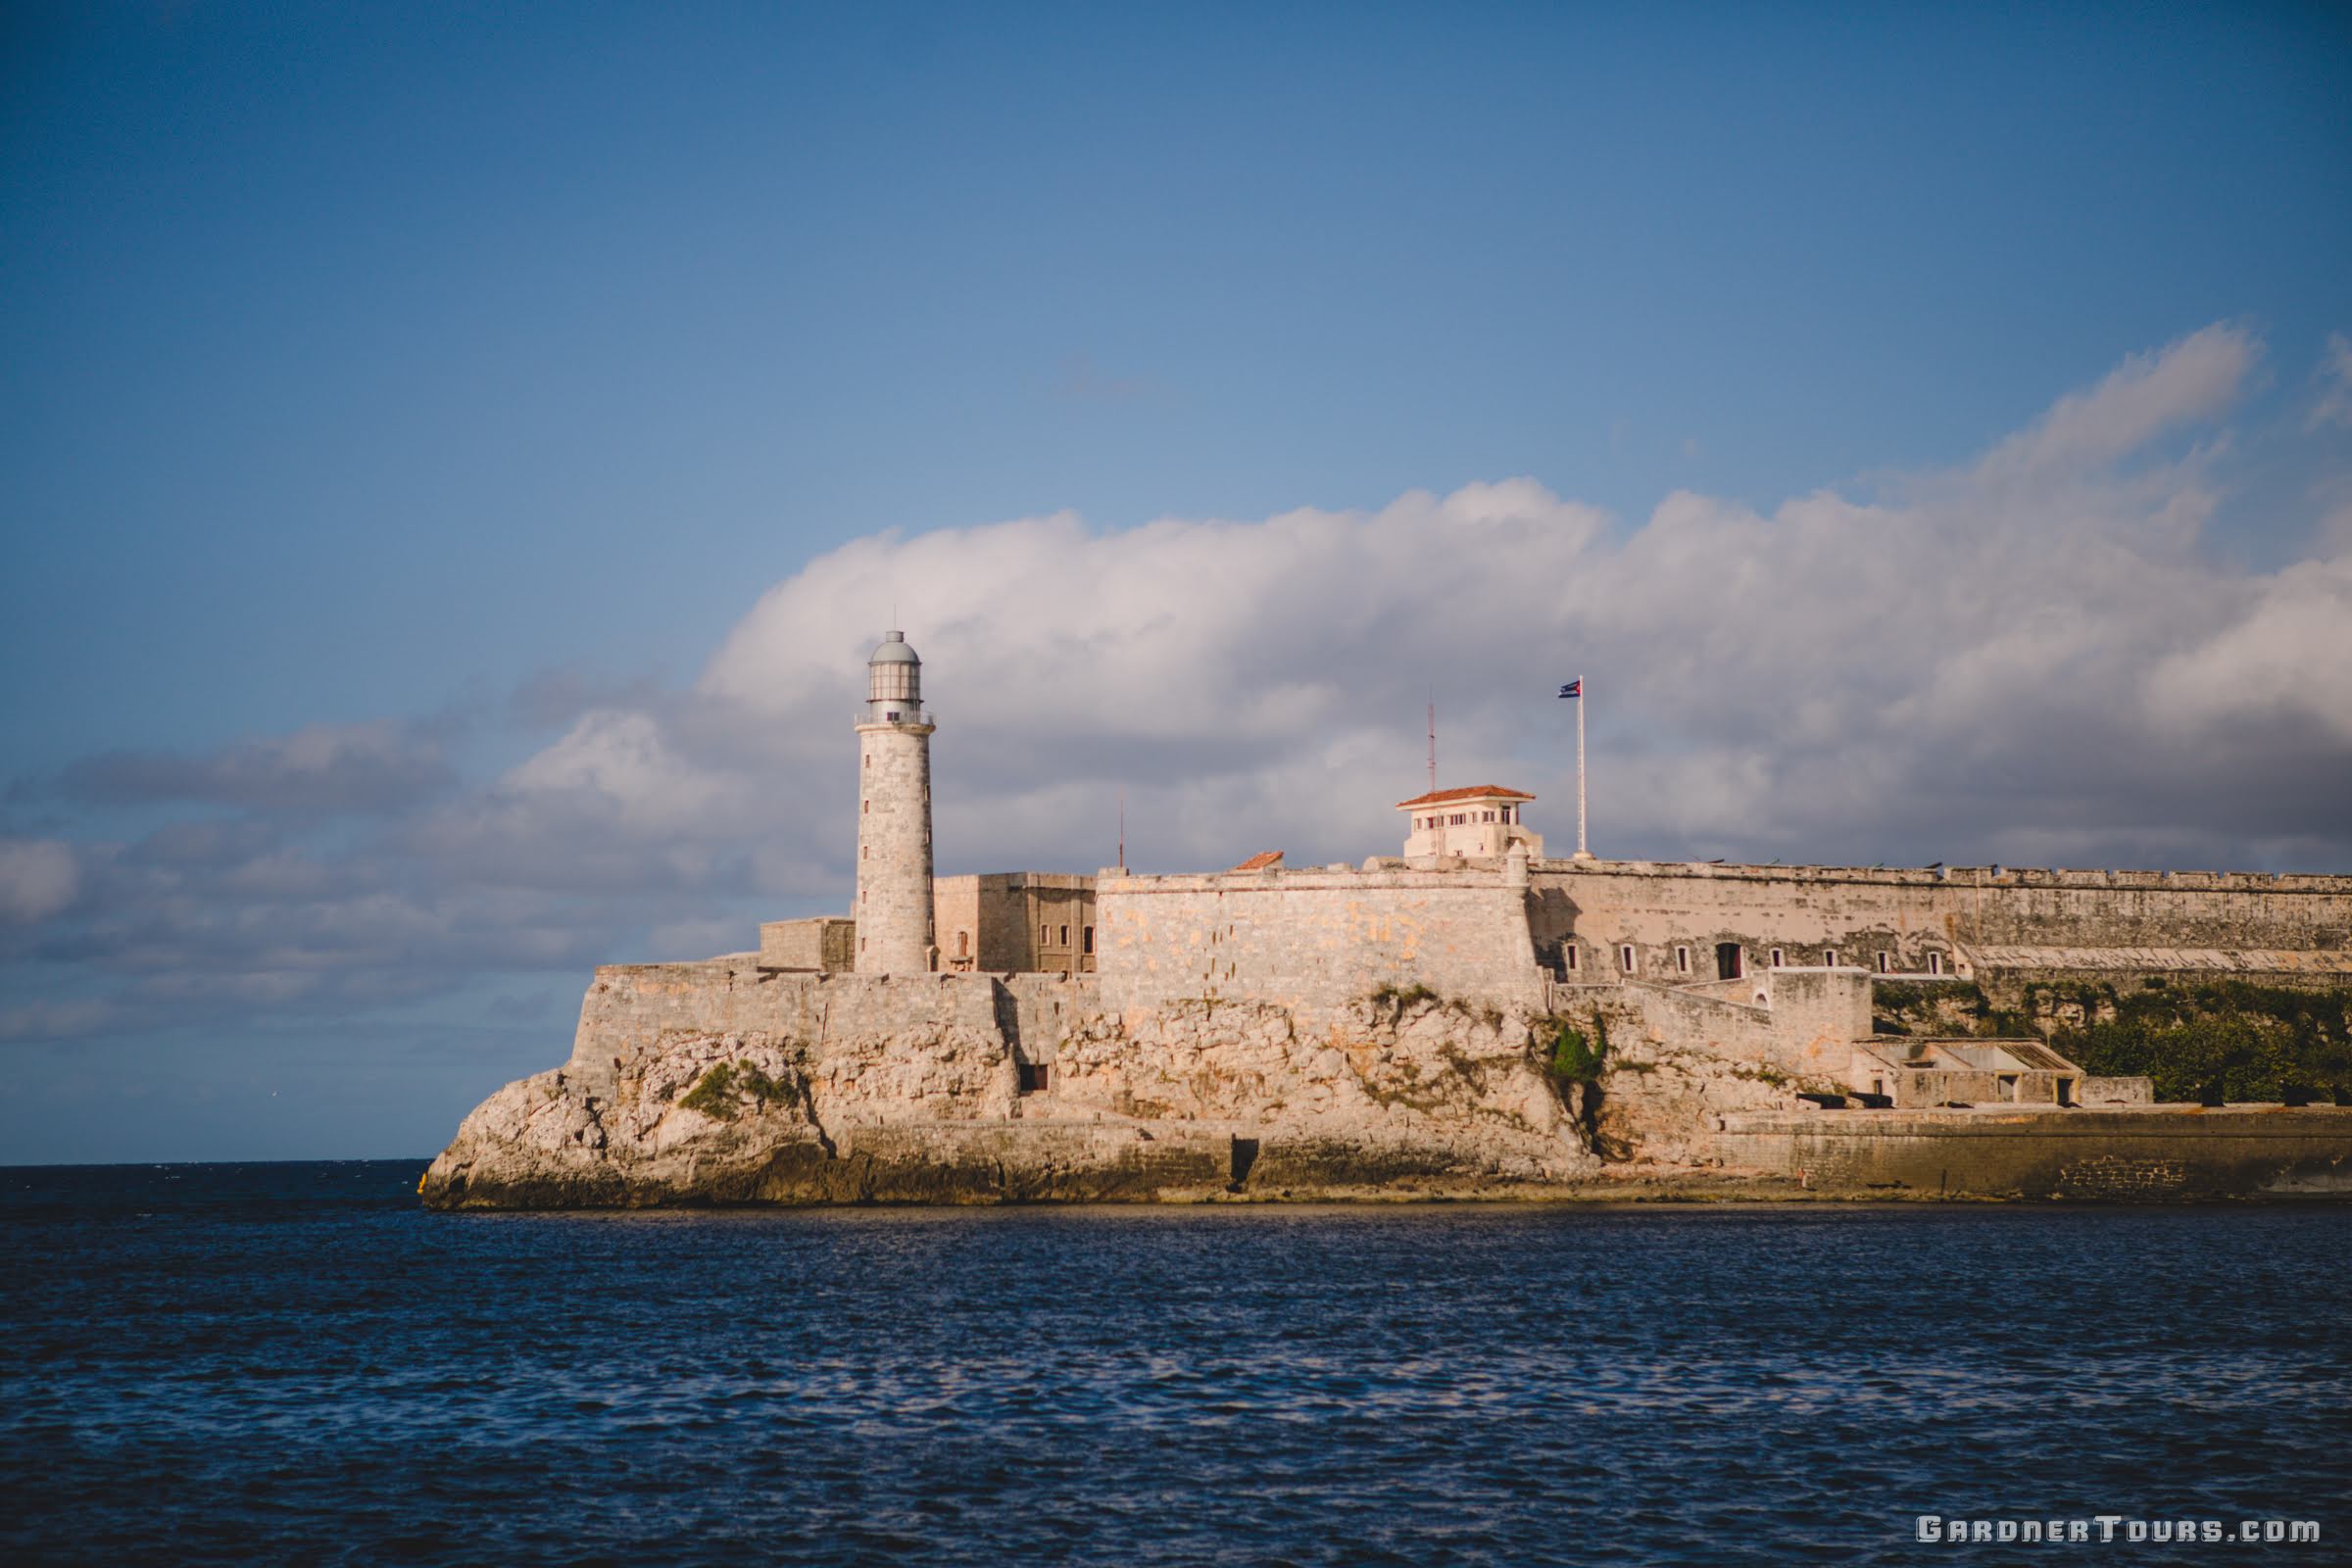 View of El Morro Castle From the Malecon across the Bay in Havana, Cuba